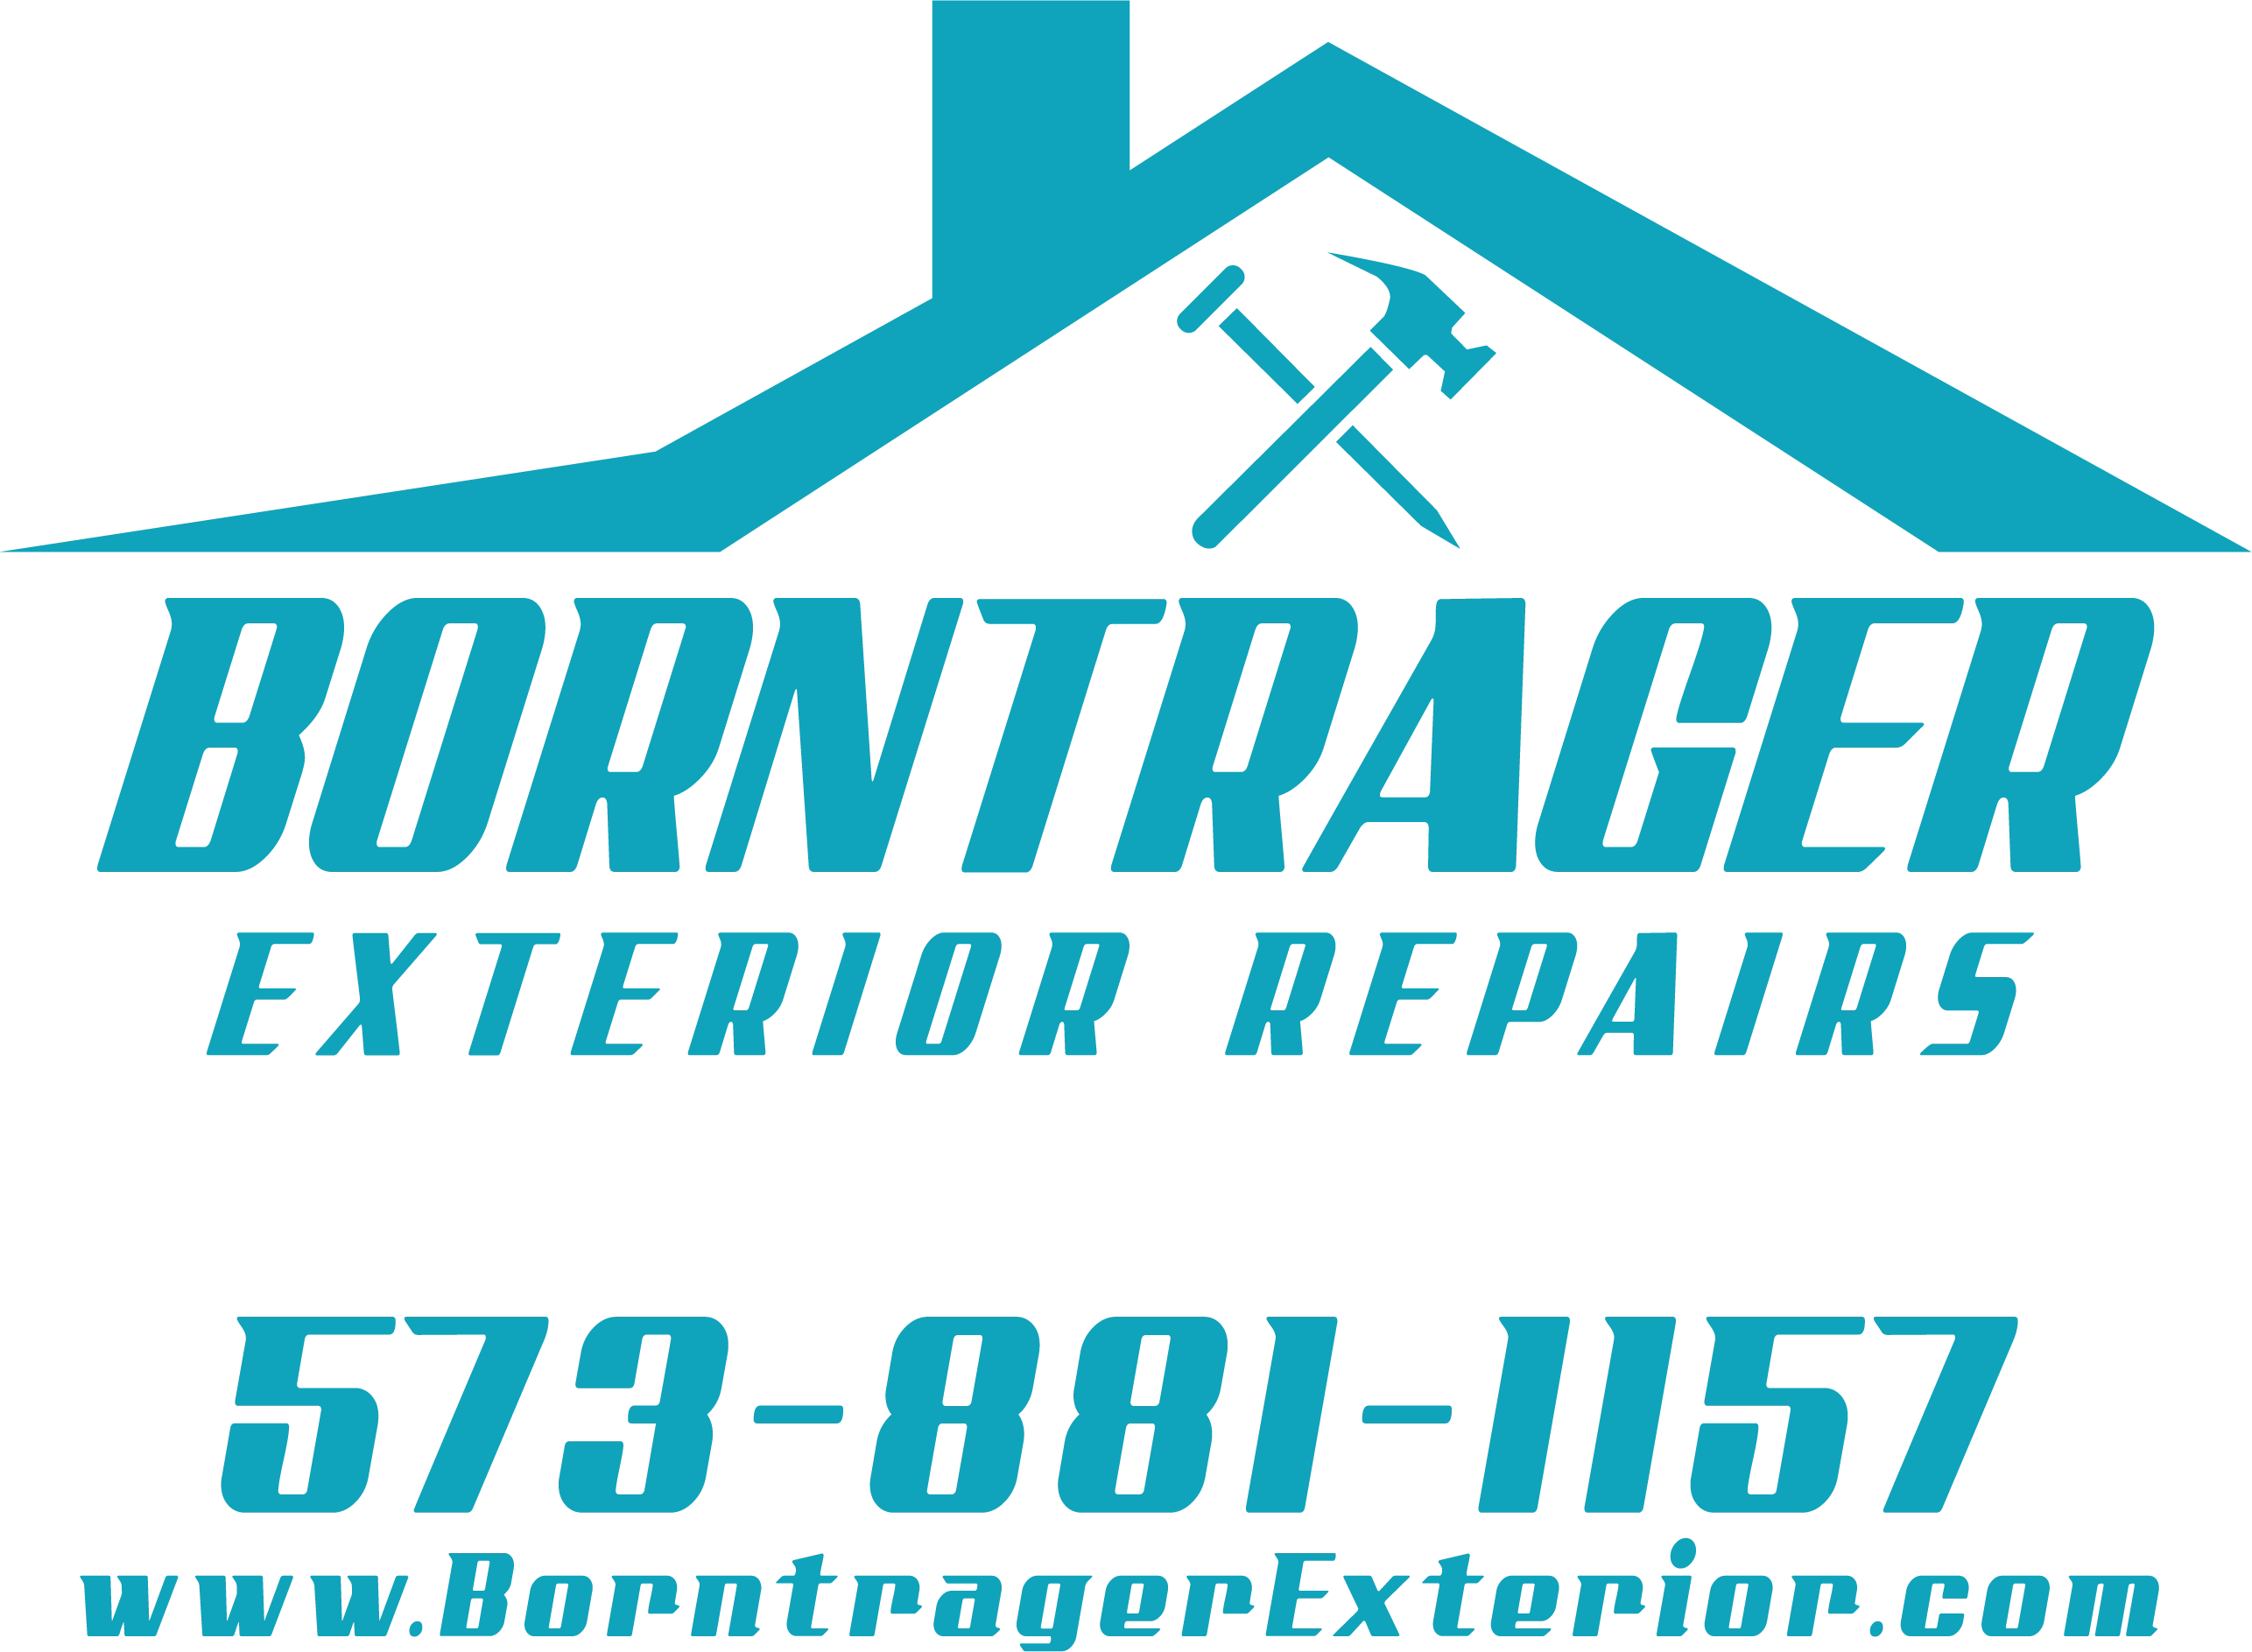 Borntrager Exterior Repairs Logo